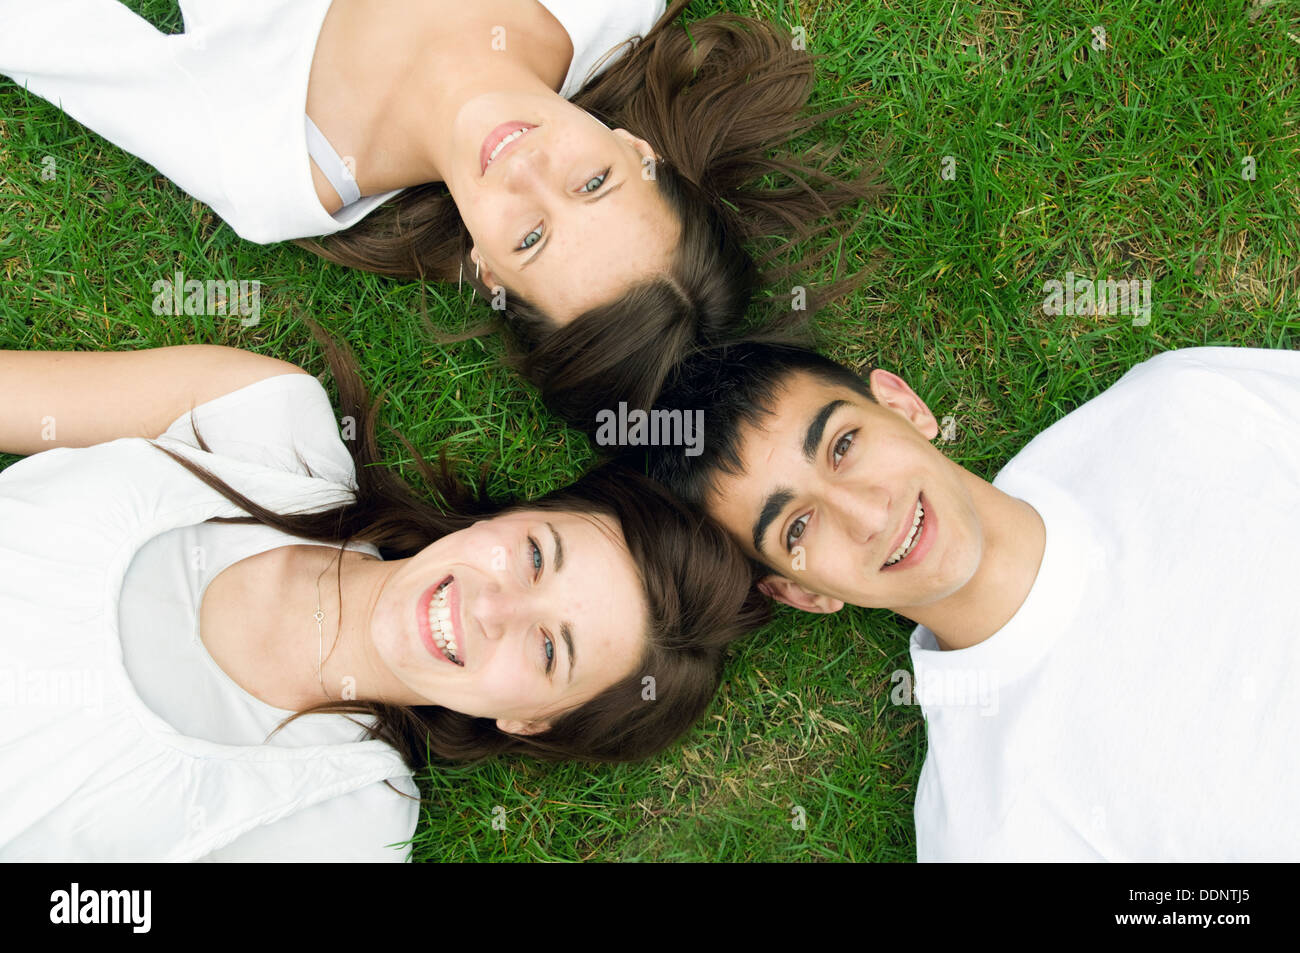 Drei junge glückliche Freunde zusammen liegend Stockfoto